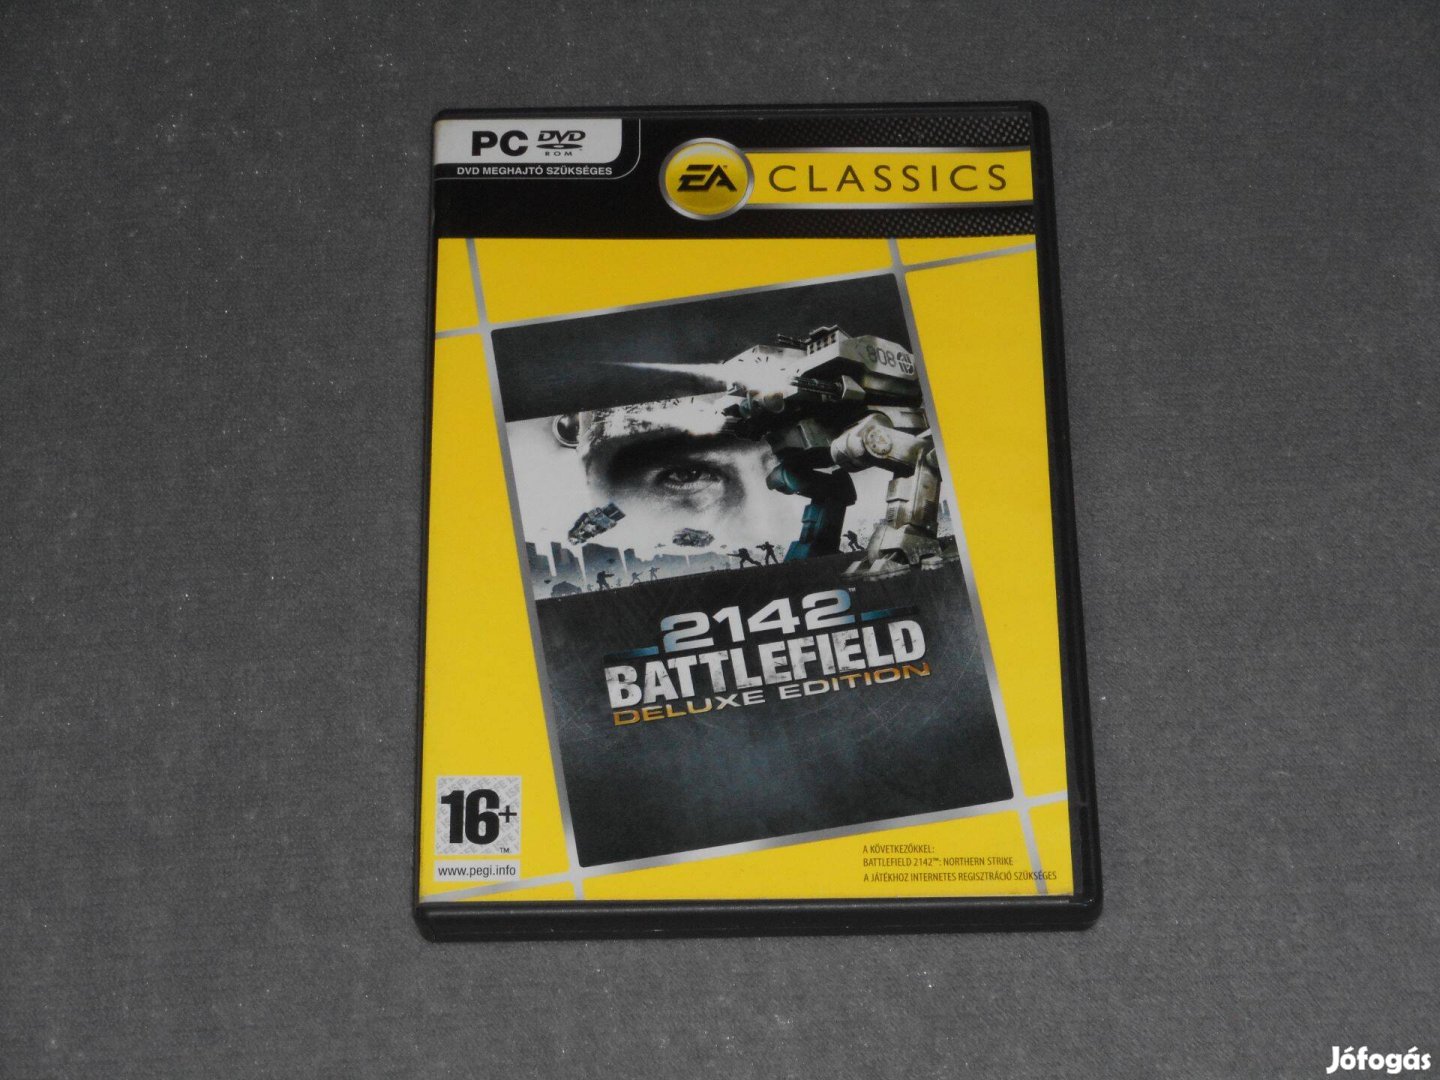 Battlefield 2142 Deluxe Edition Számítógépes PC játék